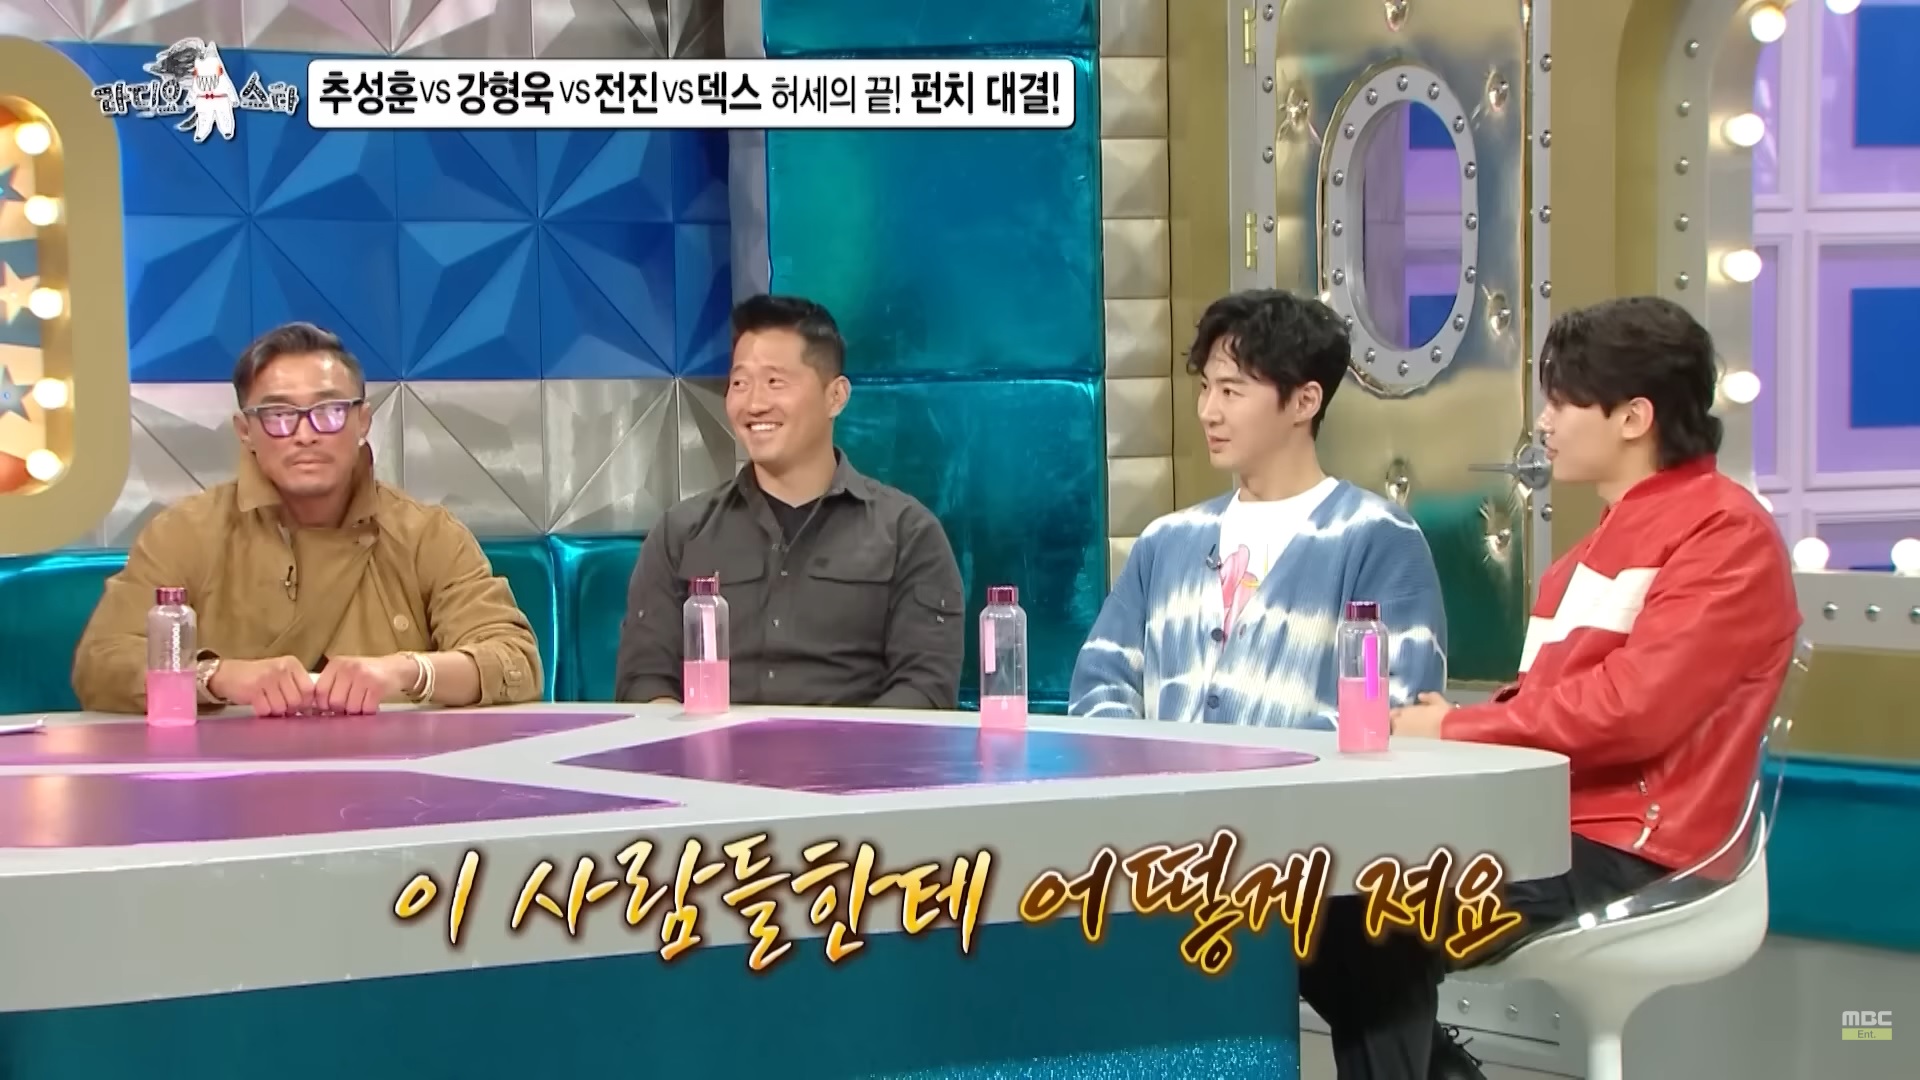 12일 방영된 MBC 라디오스타에 출연한 추성훈(왼쪽 첫 번째)이 자기 주먹을 자랑하고 있다.
MBC 유튜브 캡처